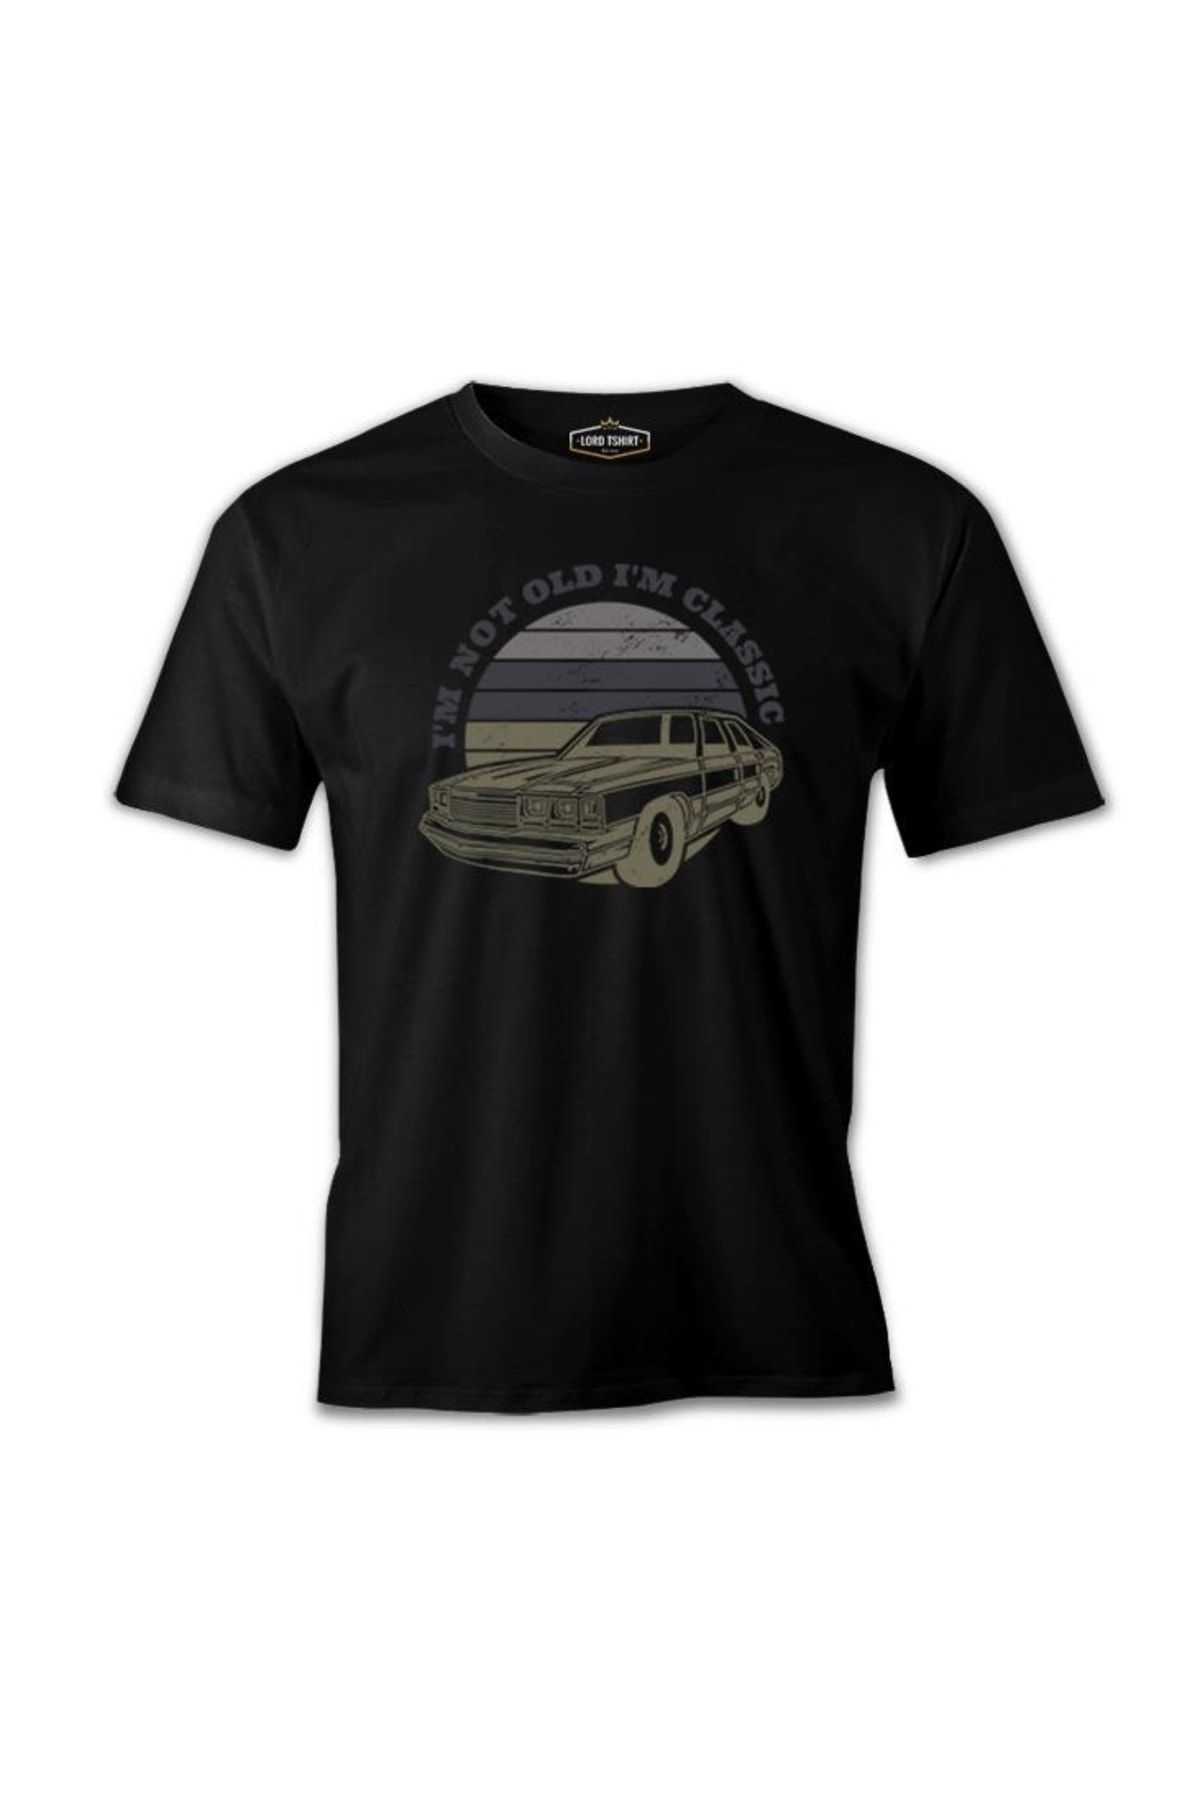 Lord T-Shirt Classic Cars Not Old Siyah Erkek Tshirt